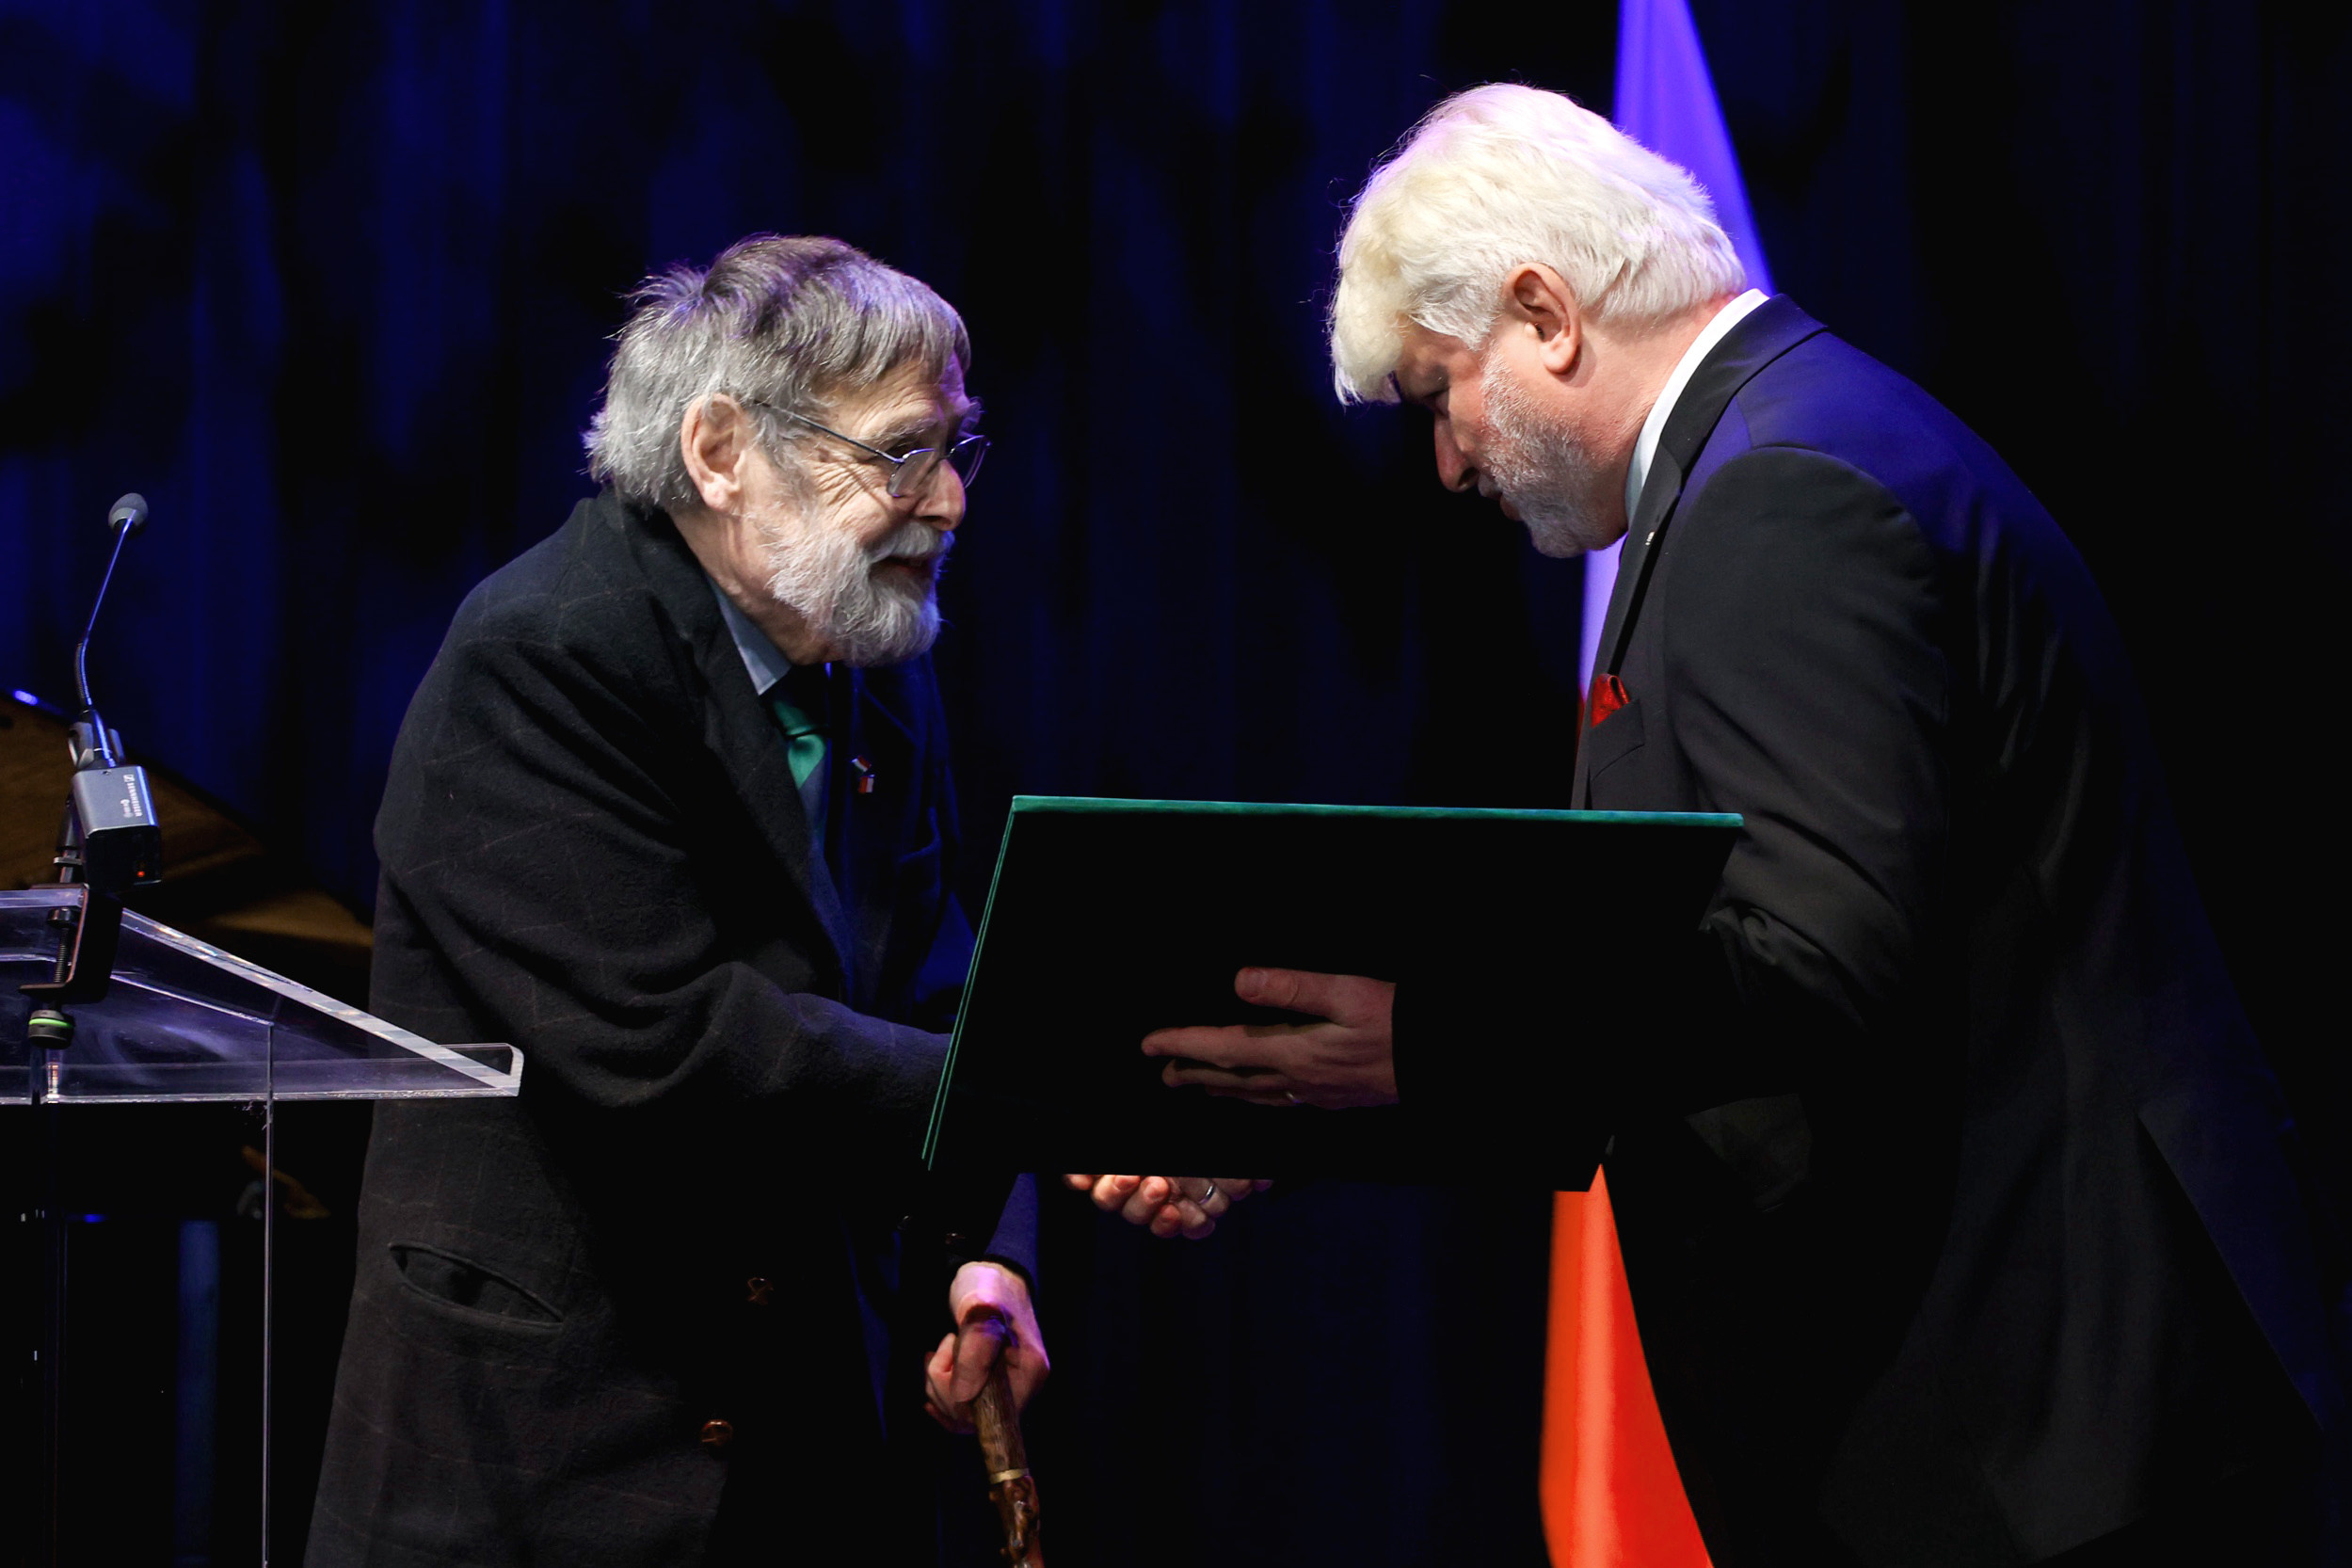 Engelmayer Ákos etnográfus vehette át az idei Felczak-díjat